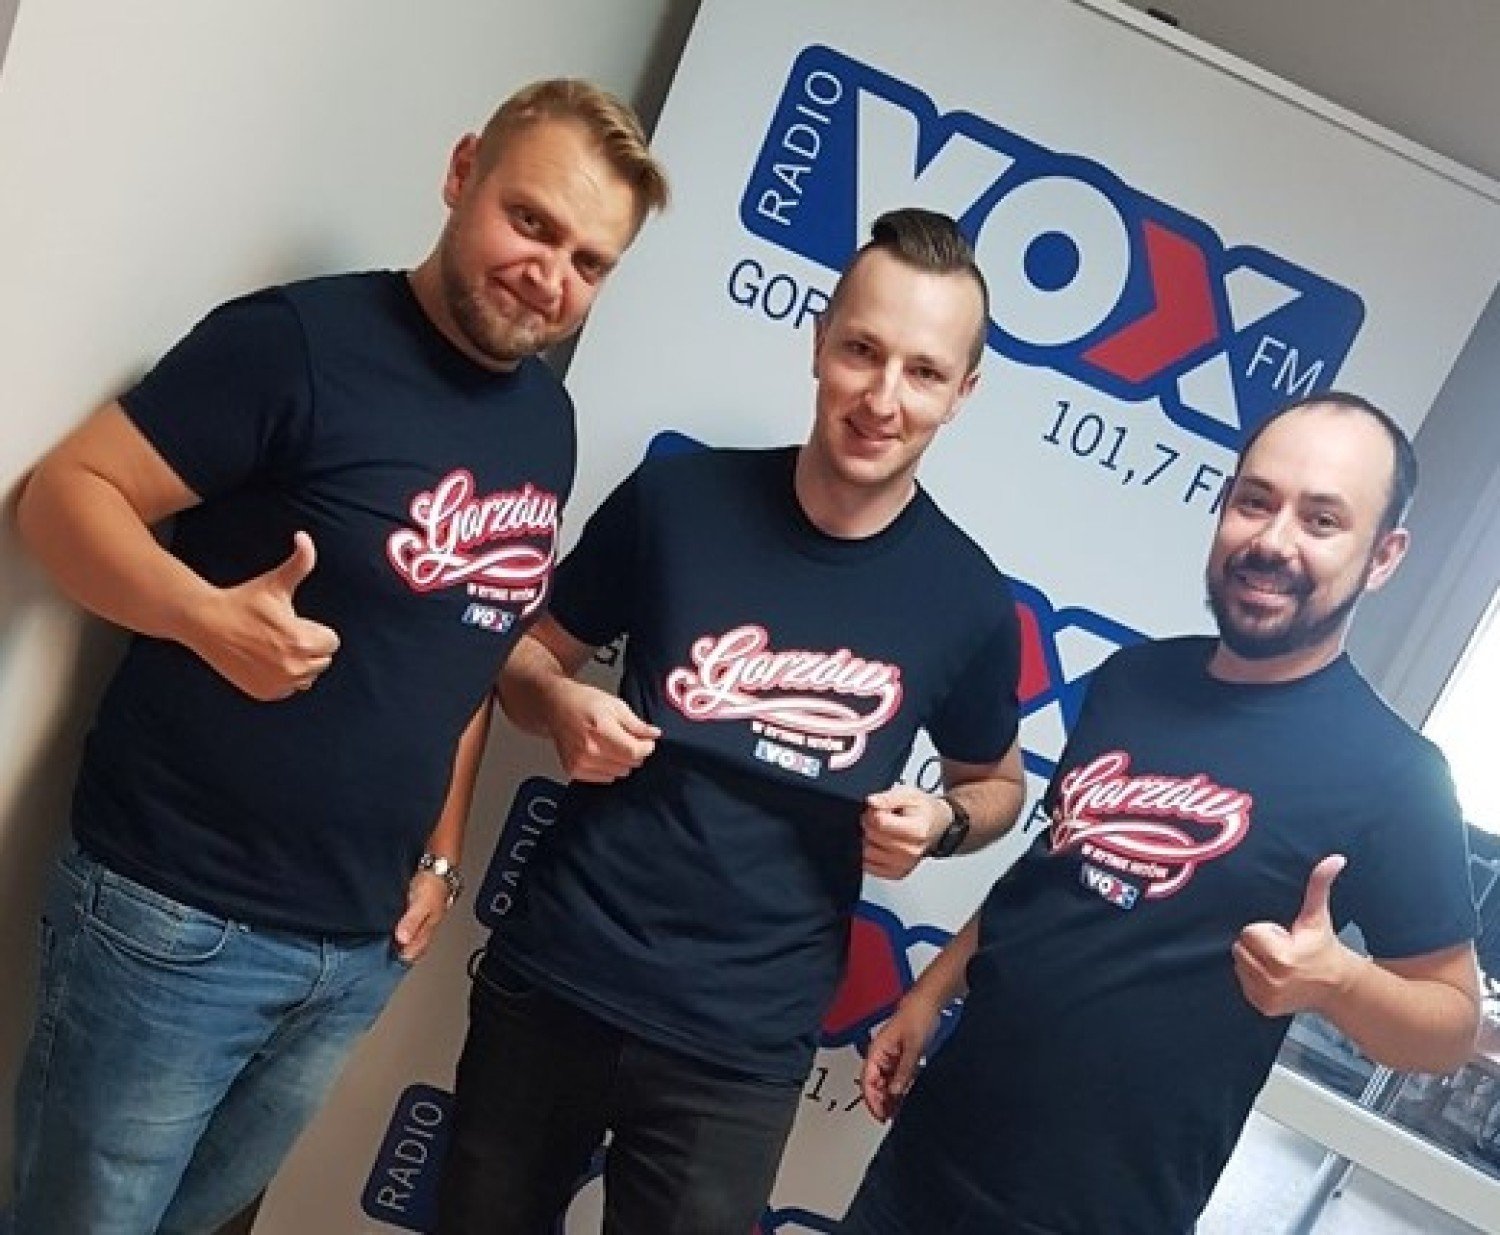 Radio VOX FM Gorzów świętuje pierwsze urodziny. Można jeszcze zdobyć  wejściówki na imprezę w dyskotece Wesele | Gorzów Wielkopolski Nasze Miasto